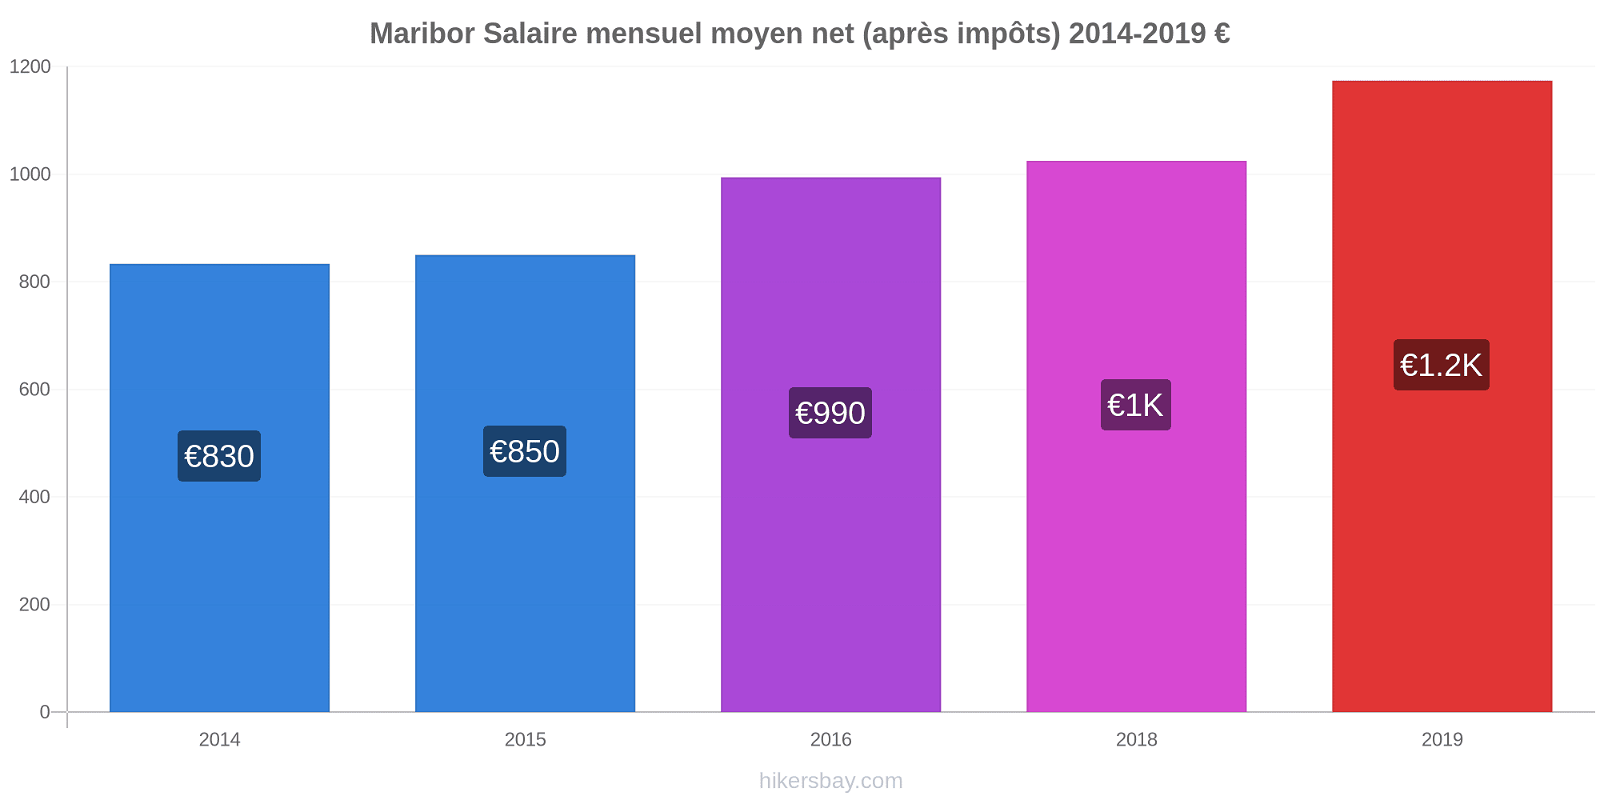 Maribor changements de prix Salaire mensuel Net (après impôts) hikersbay.com